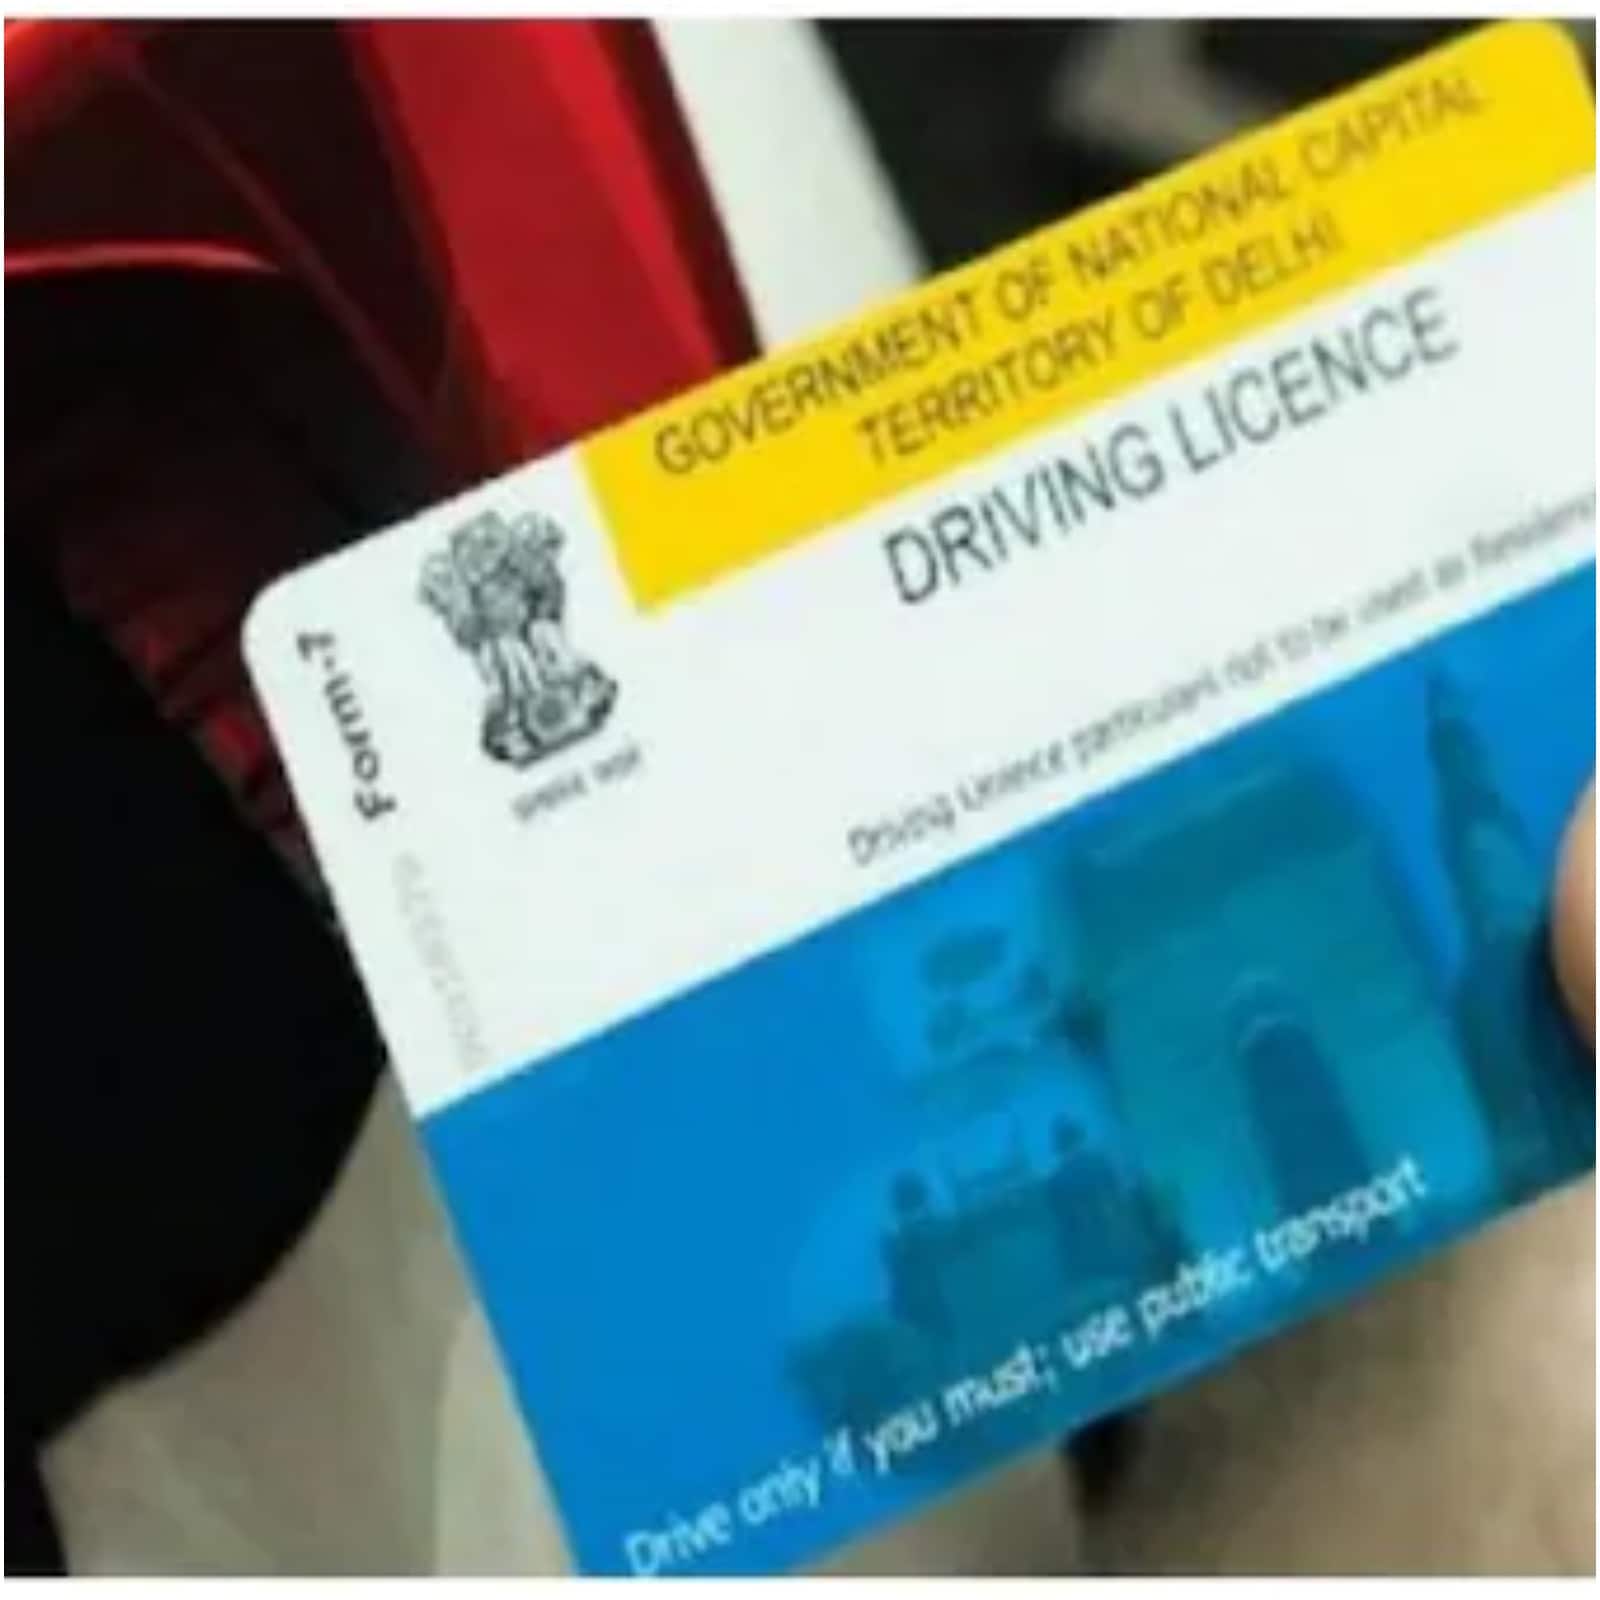 Driving license made of girl sitting in Australia hrrm - हरियाणा: नियमों को ताक पर रख ऑस्ट्रेलिया में बैठी लड़की का बना दिया ड्राइविंग लाइसेंस, ऐसे हुआ खुलासा